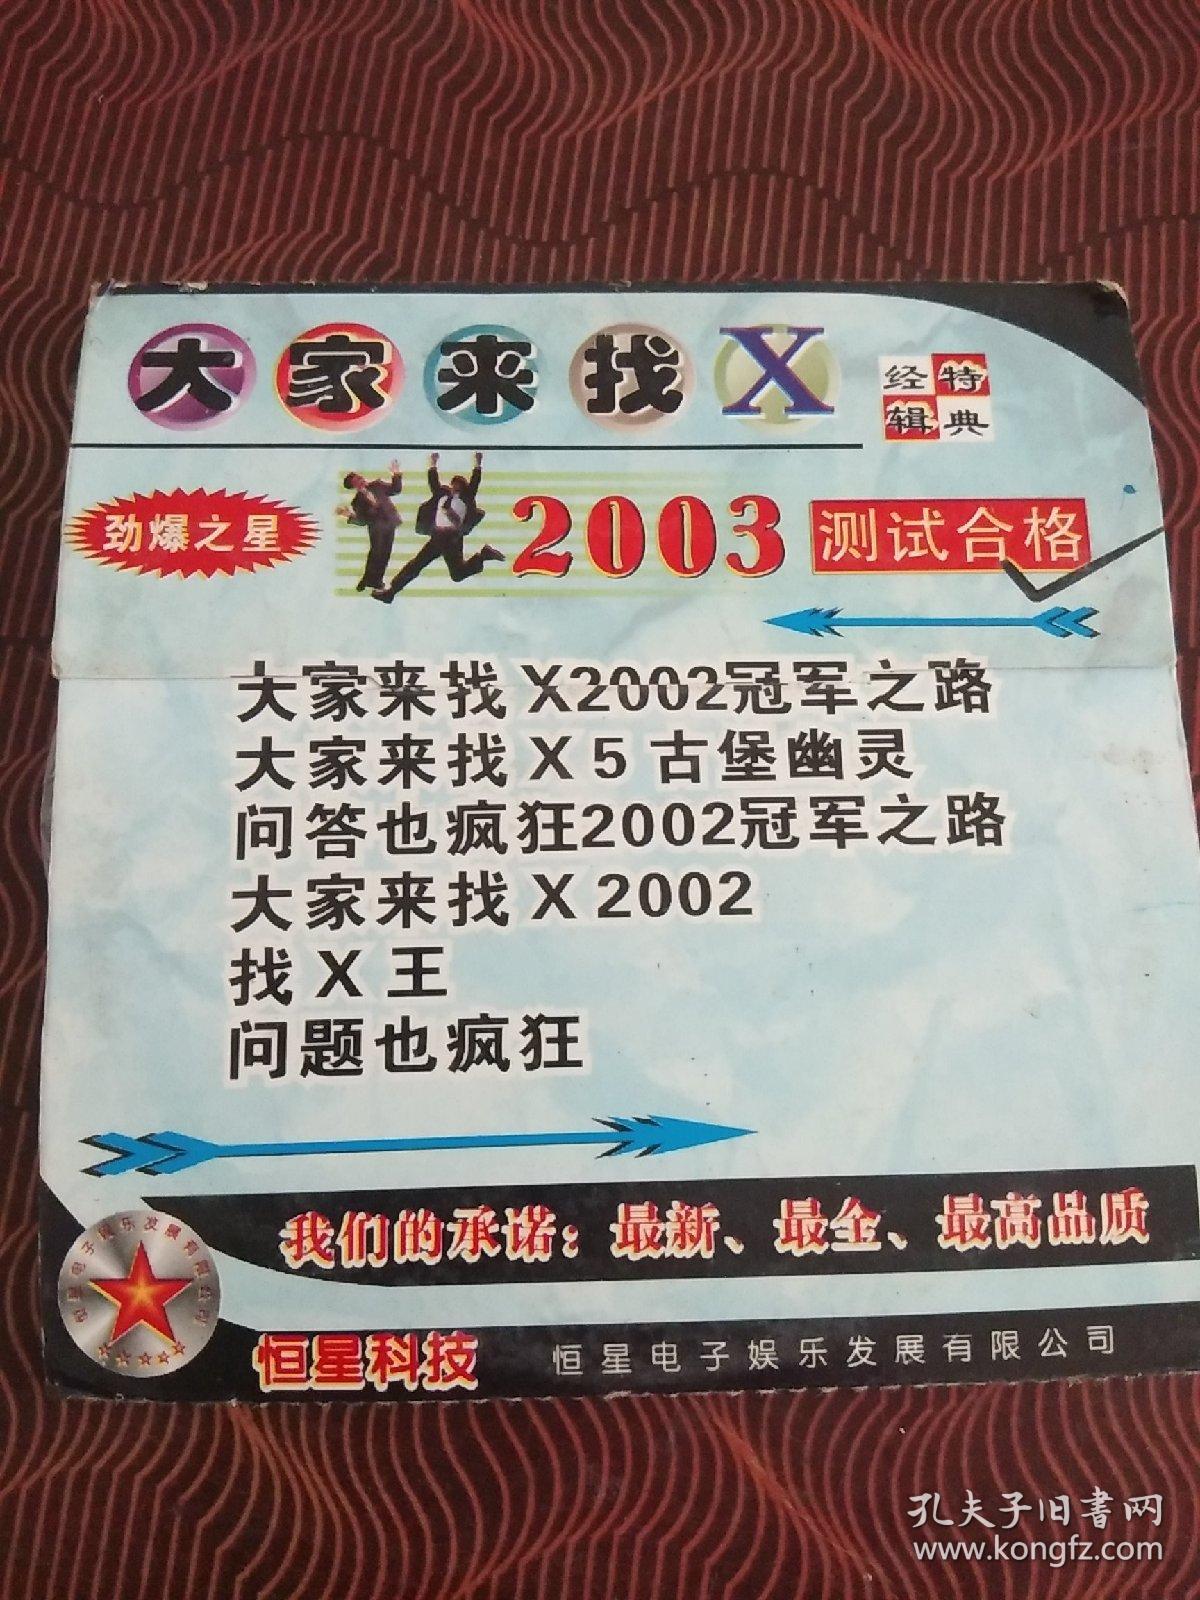 游戏光碟 : 大家来找 X 经典特辑 1CD.